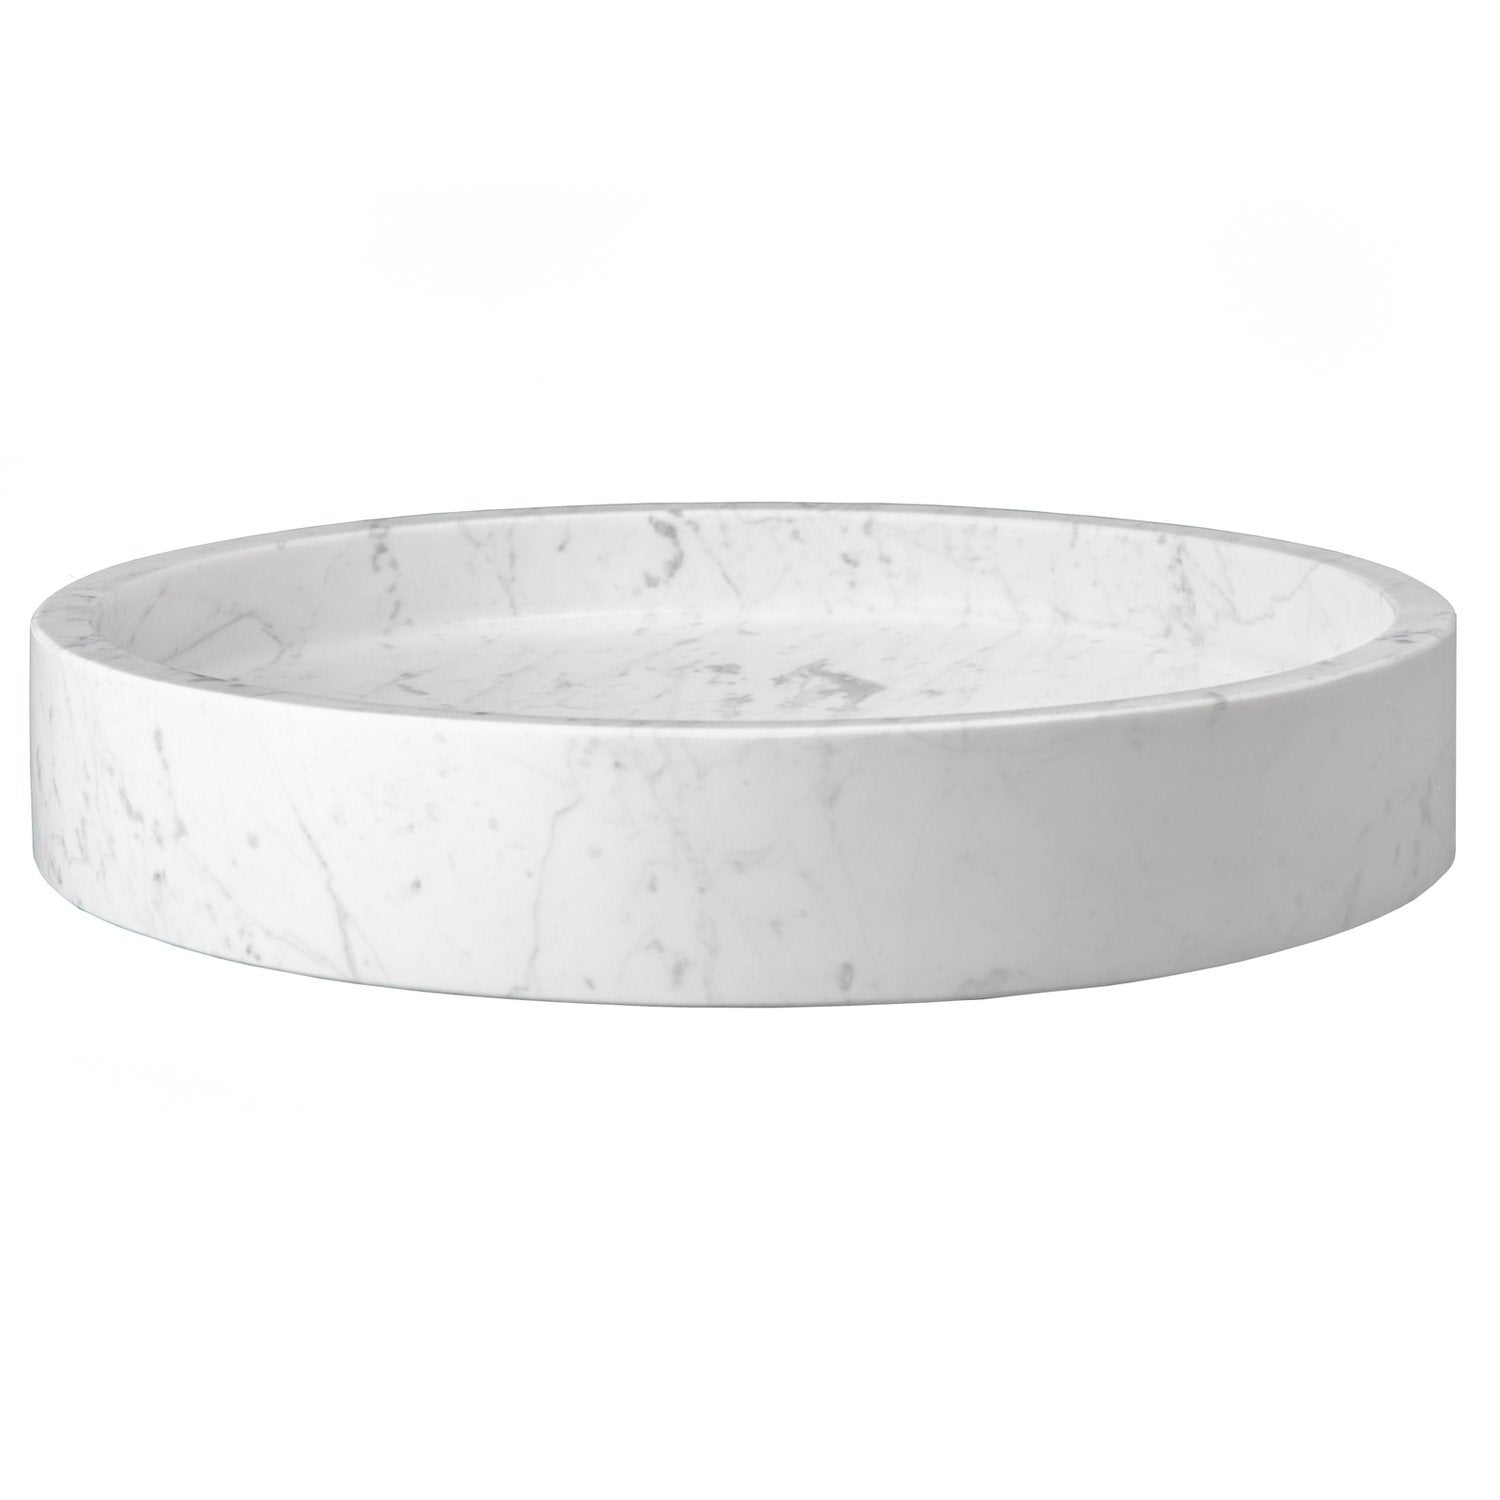 Eden Bath Low Round Vessel Sink - White Carrara Marble